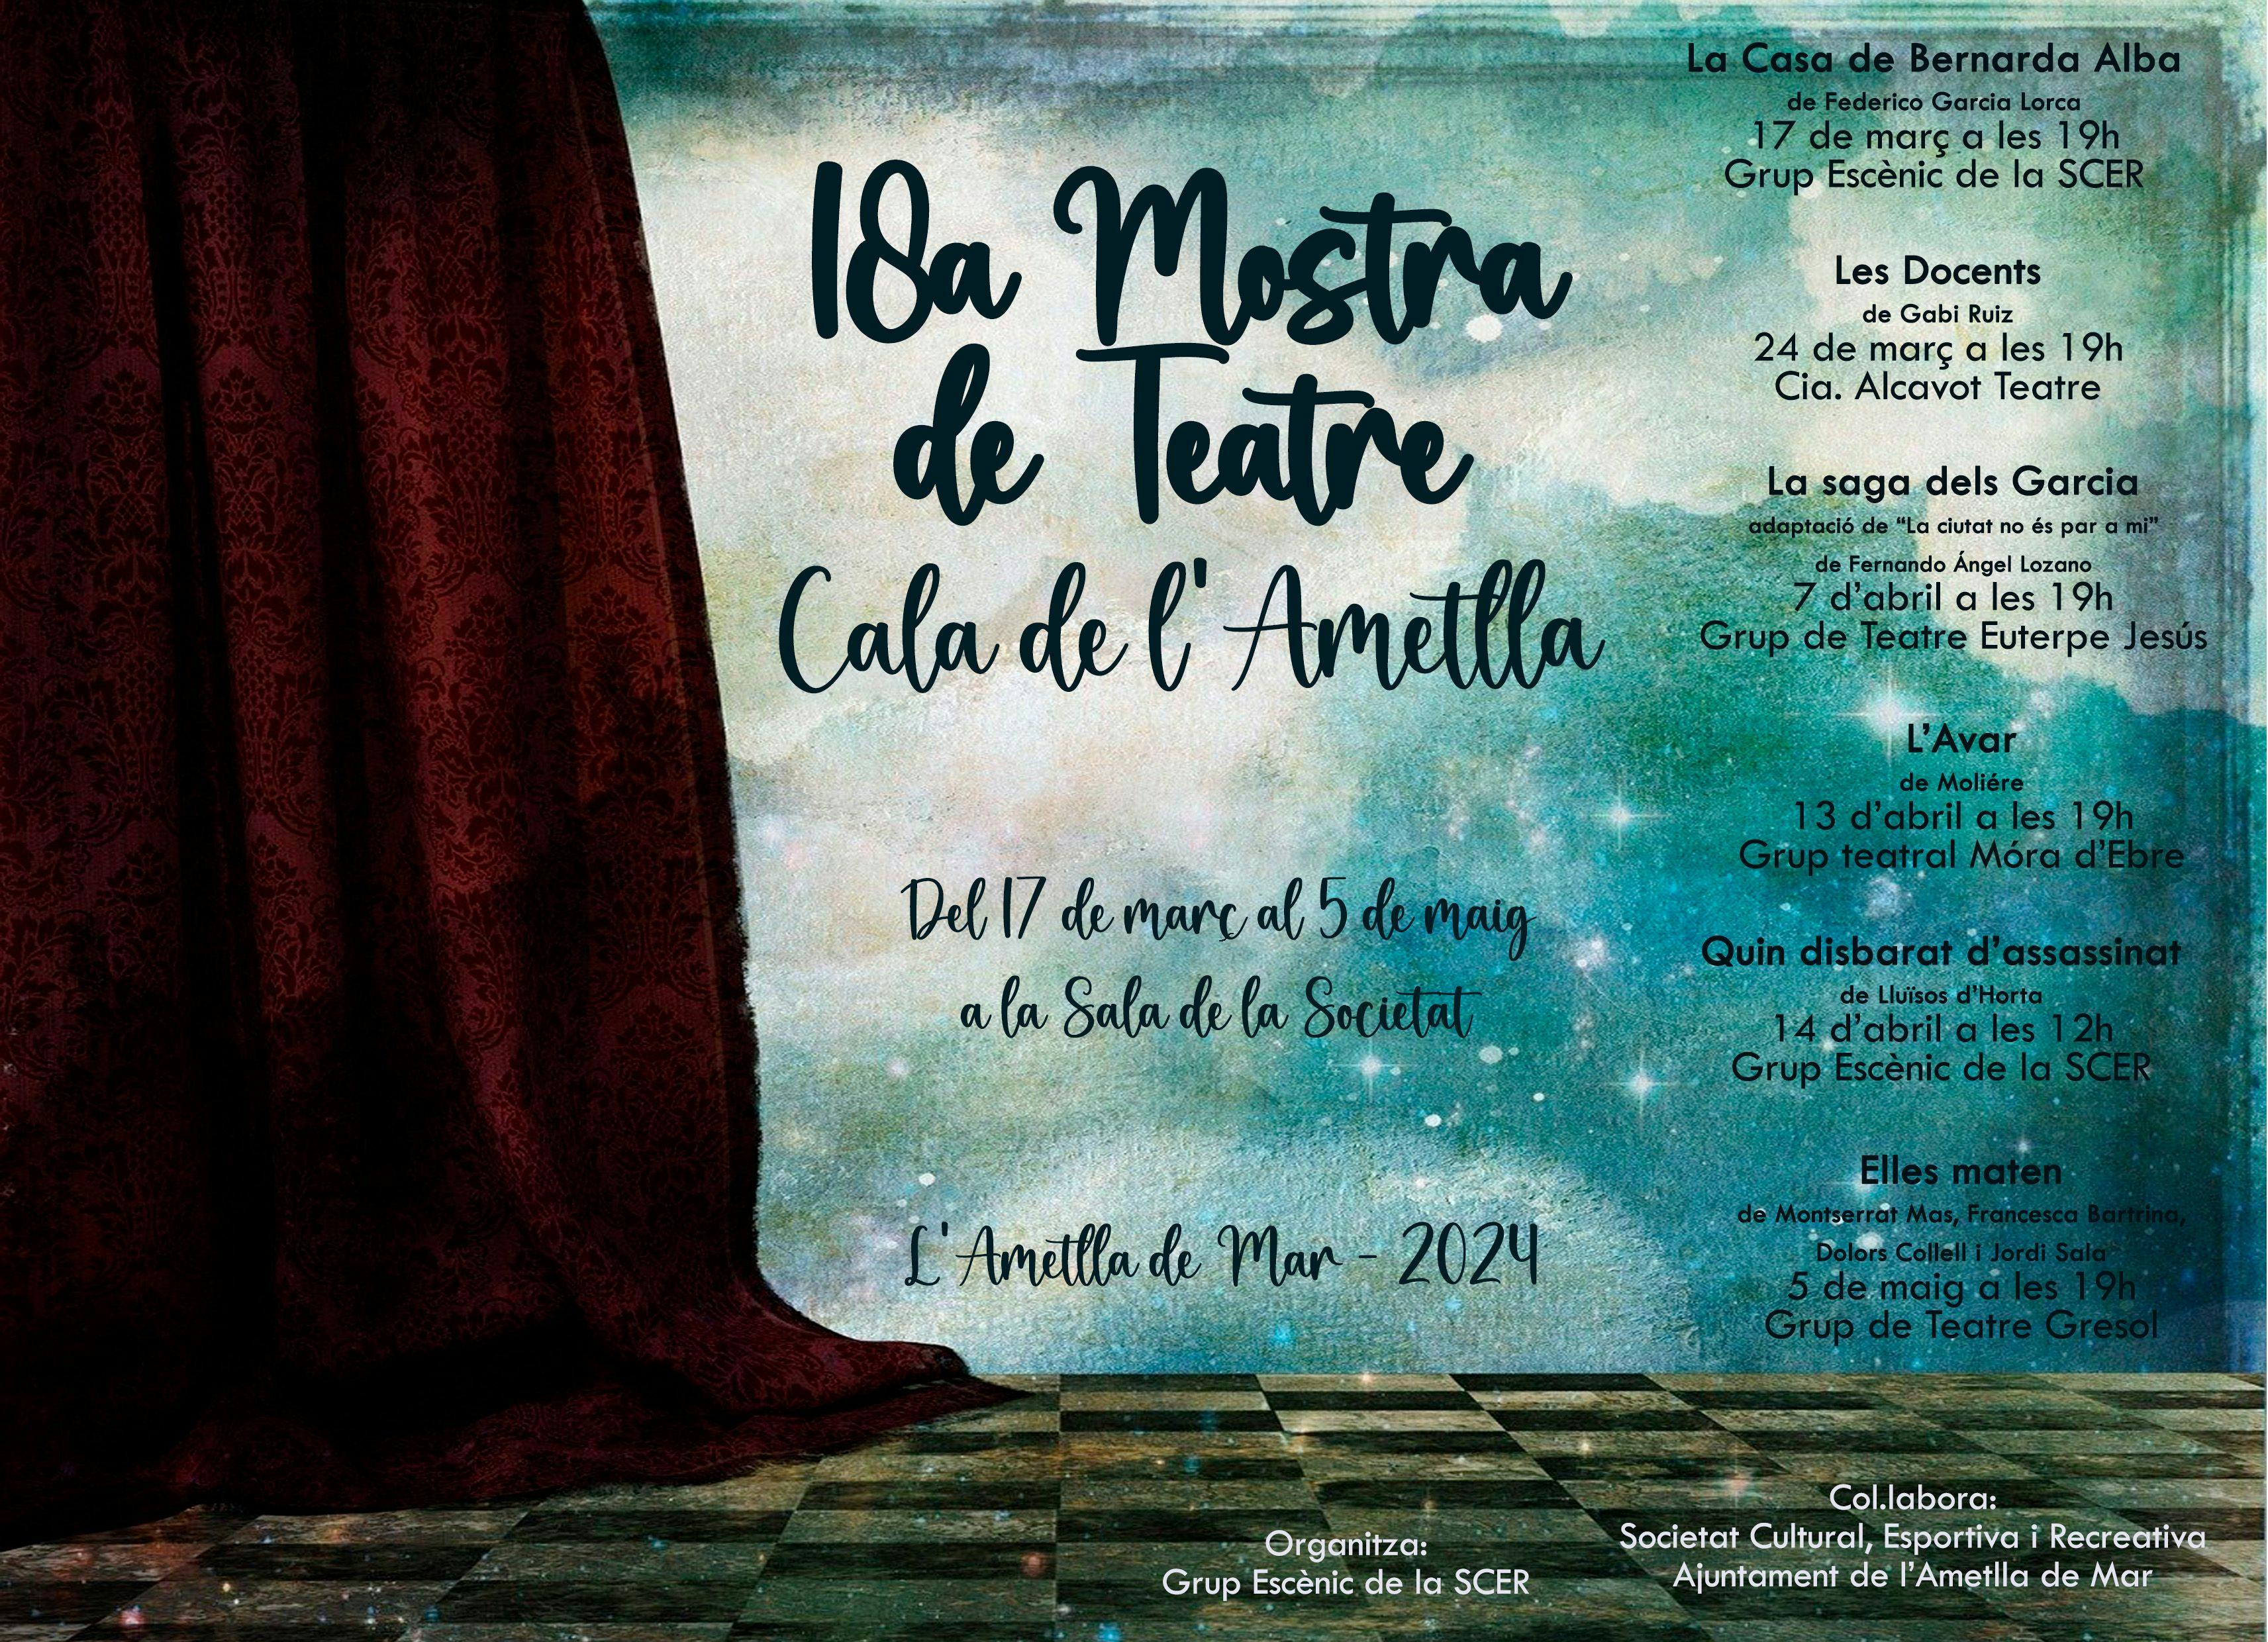 18a Mostra de teatre Cala de l'Ametlla